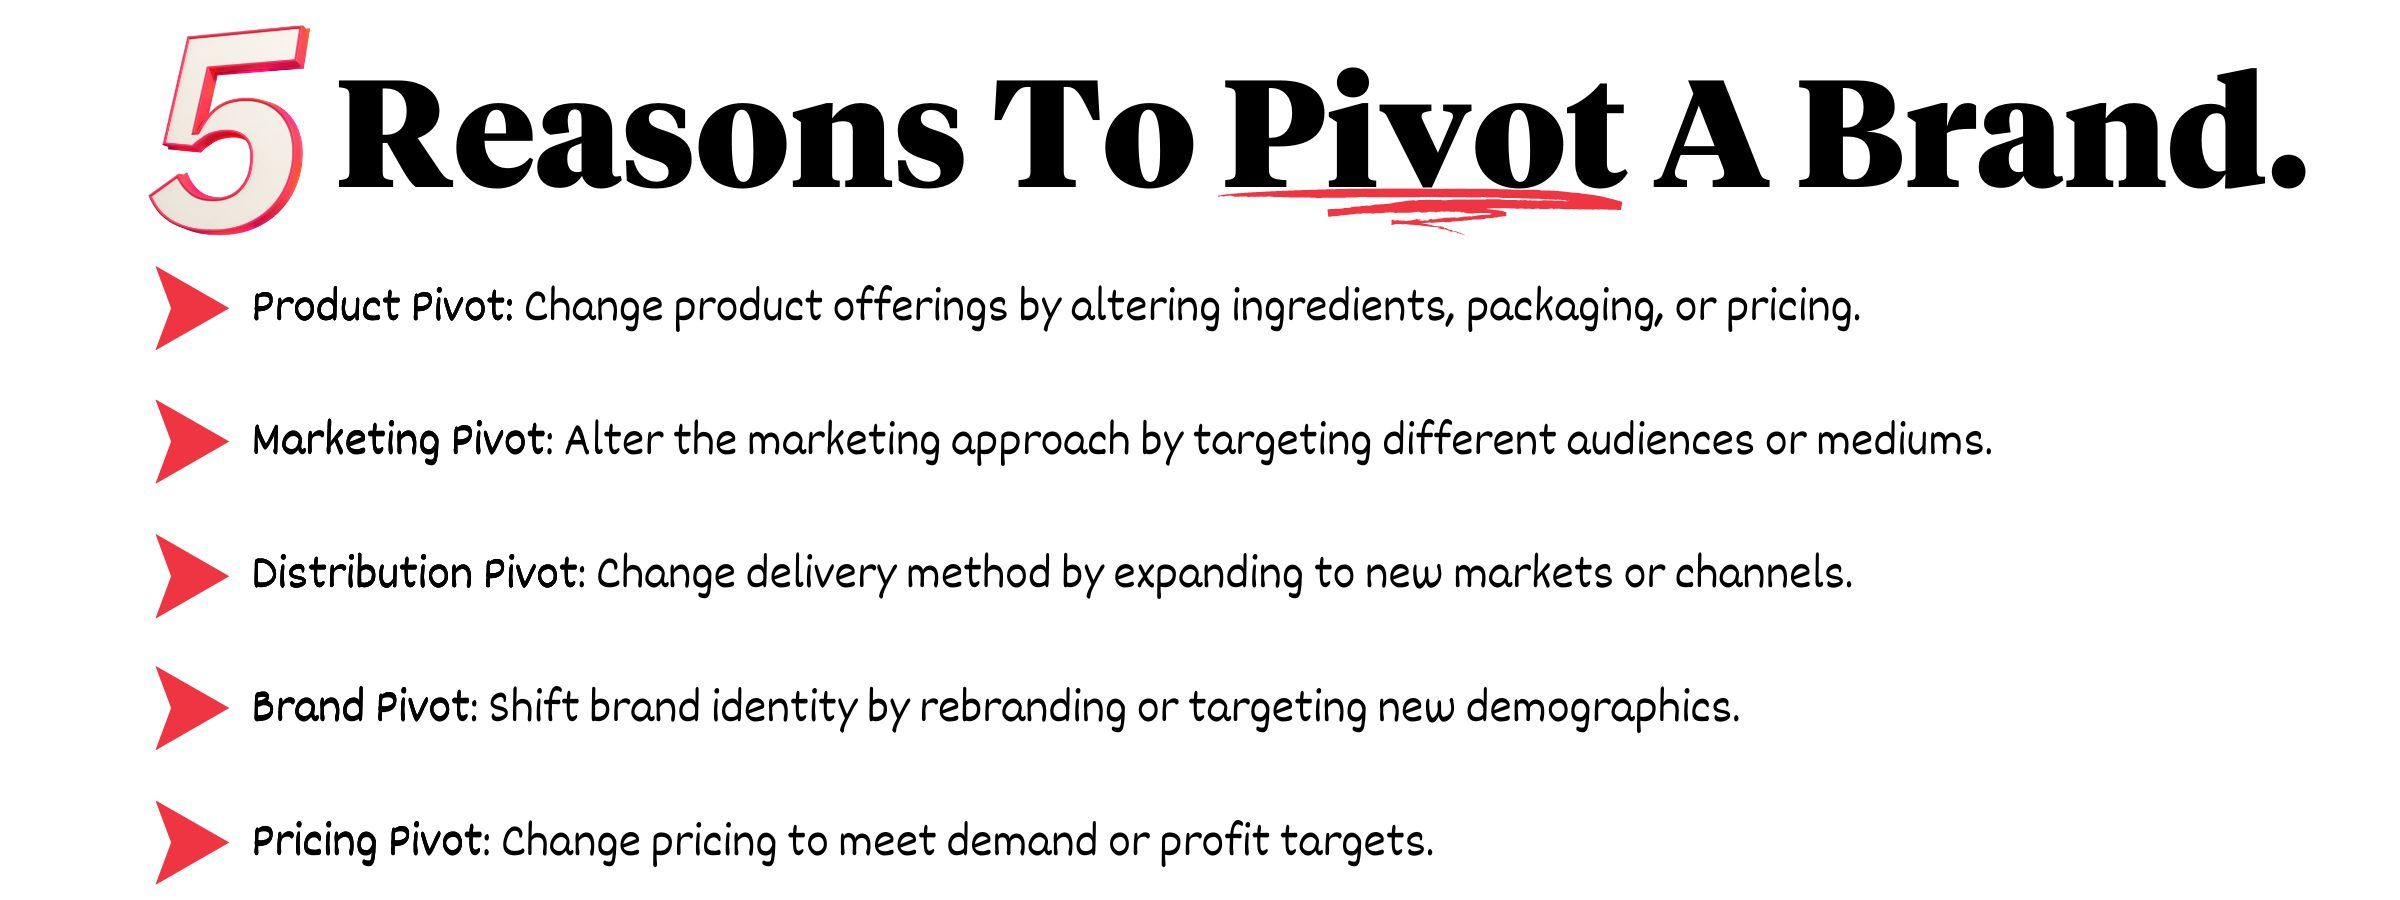 5 Reasons To Pivot A Brand